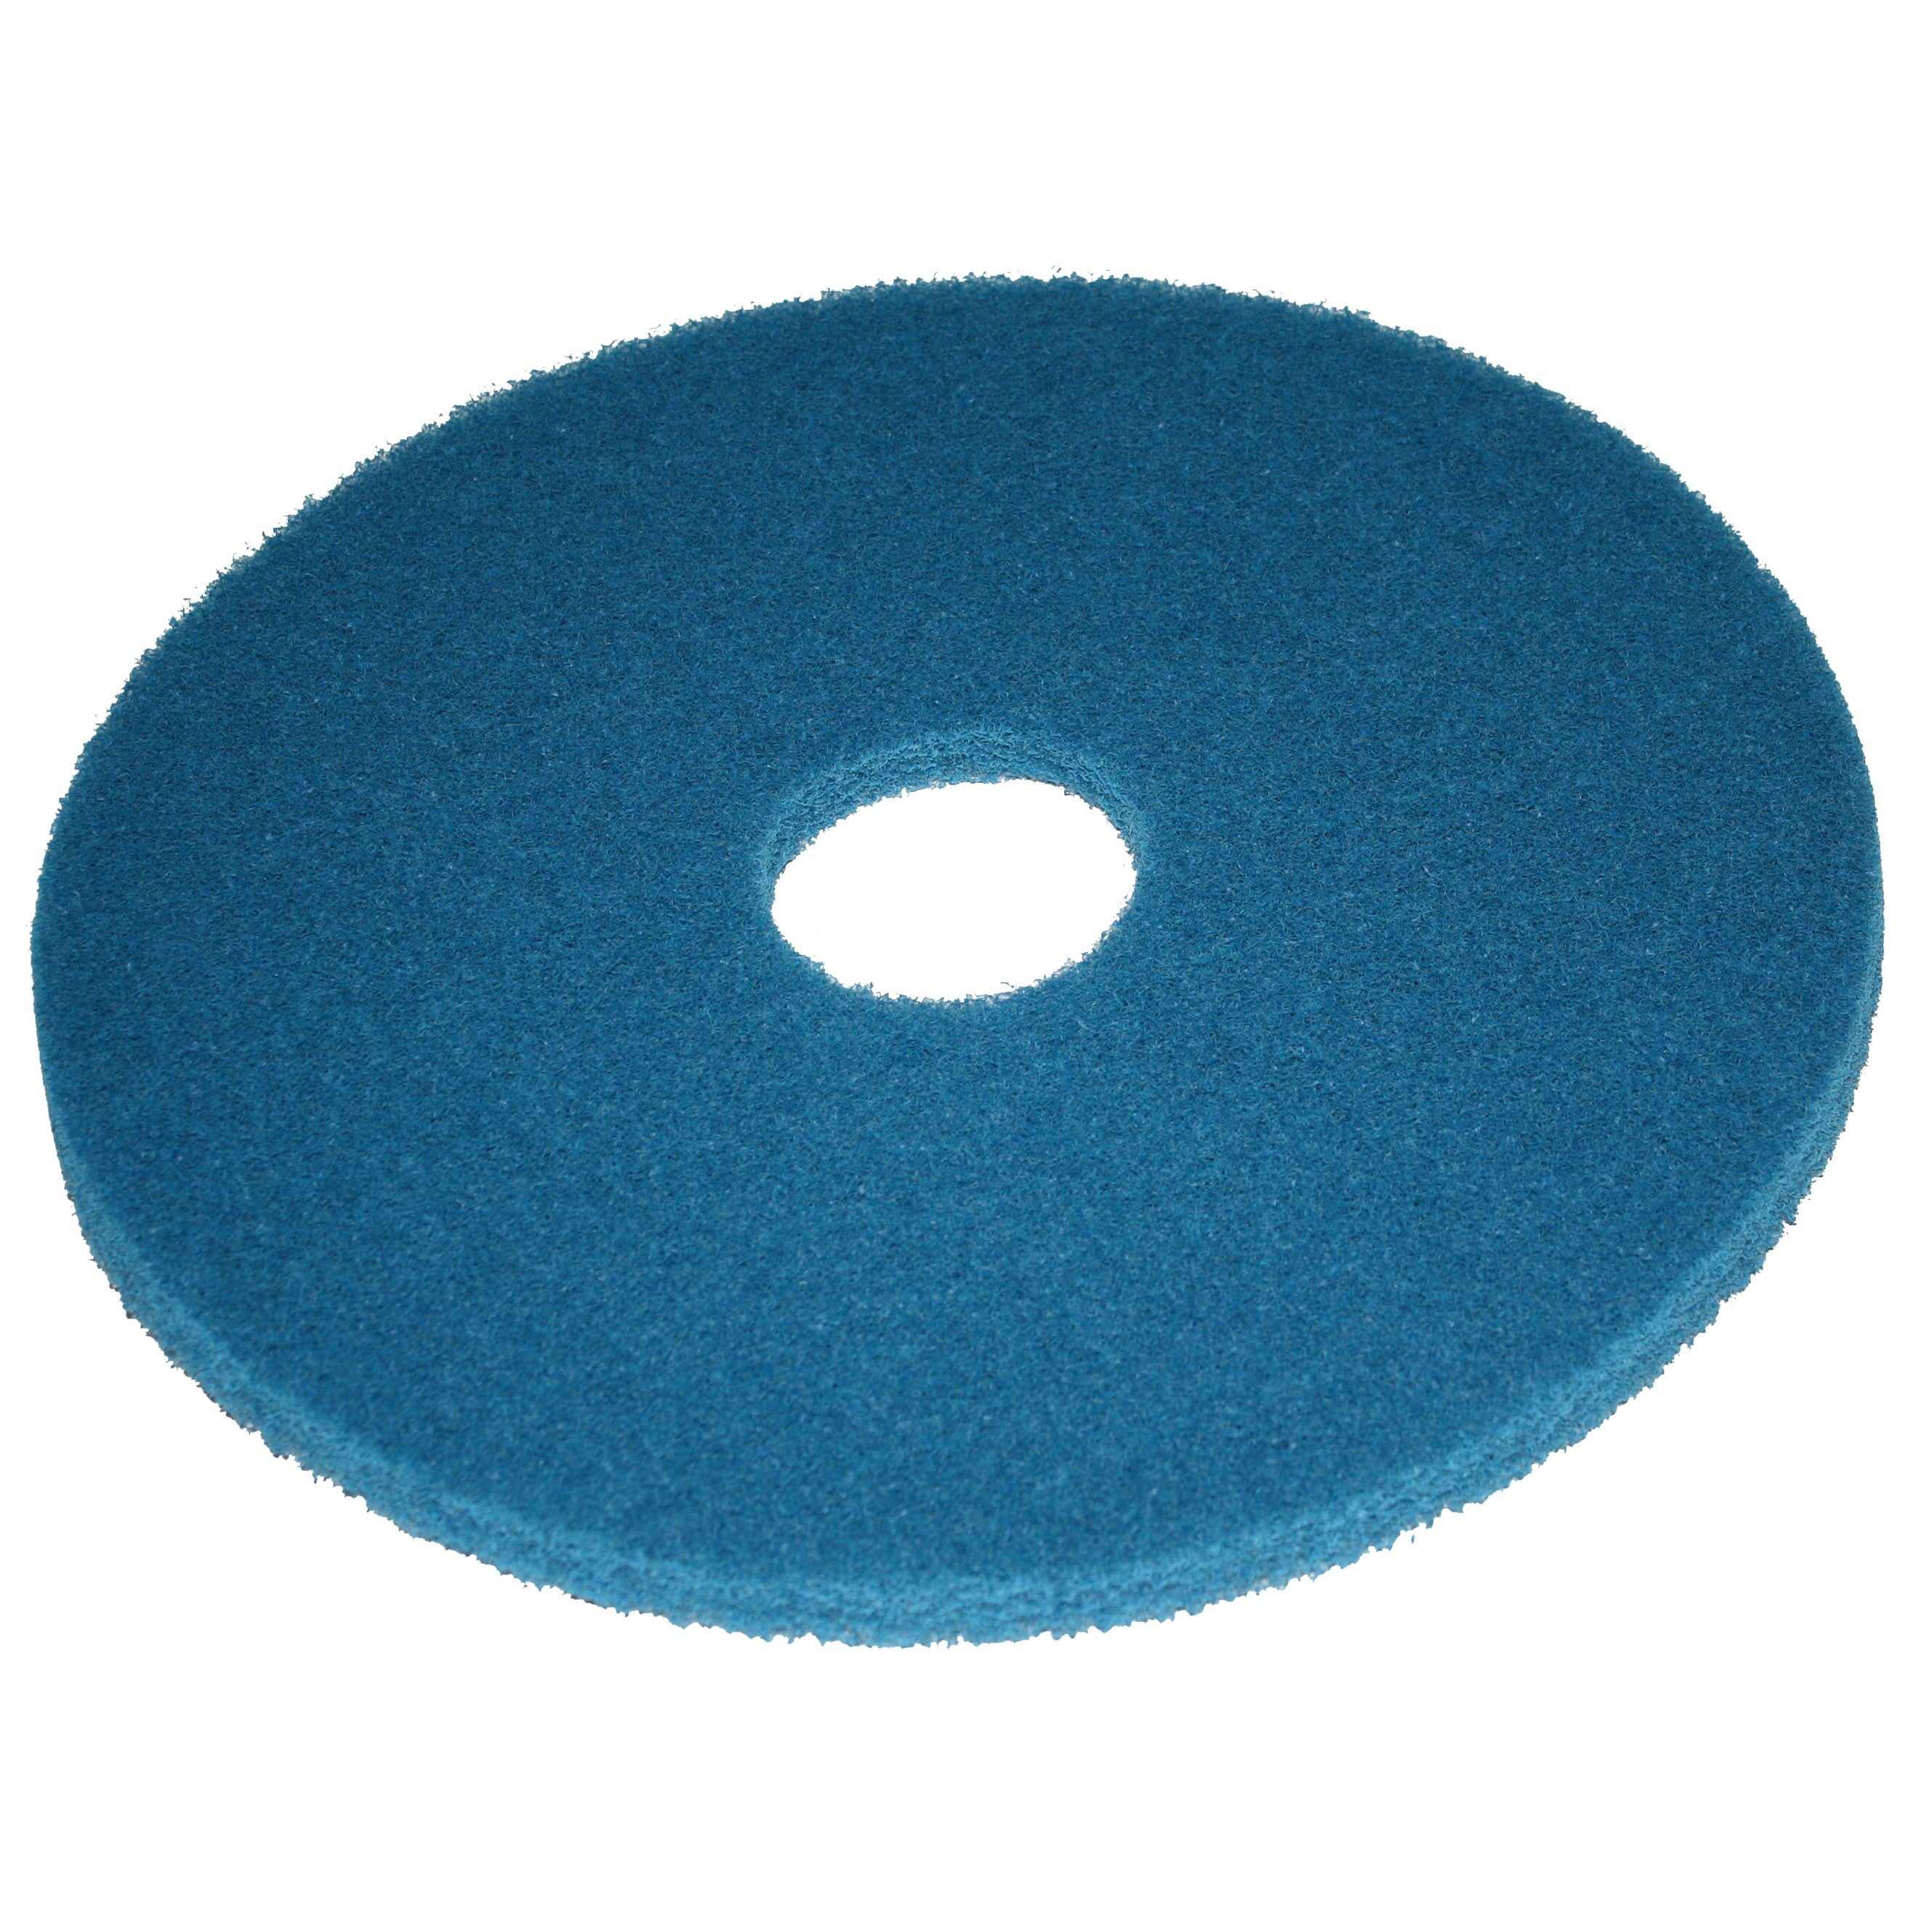 Pad bleu, Ø 280 mm, polyester